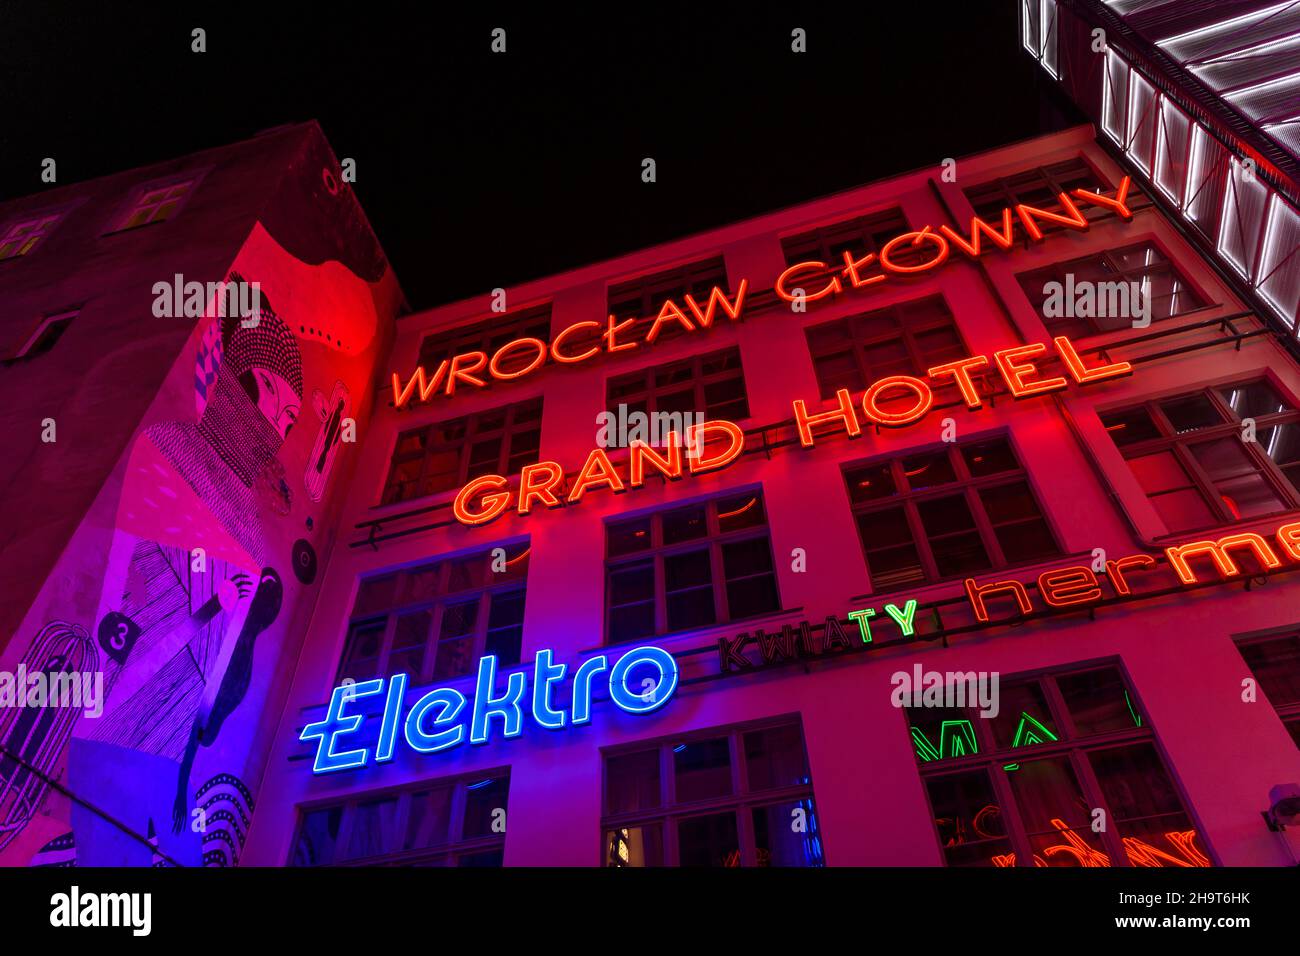 Abendaufnahmen auf der Seite der Galerie Neon in Wrocław in Polen. Ein Fest für die Augen alter Neonschilder aus ganz Polen, alles in einem geschützten Innenhof. Stockfoto